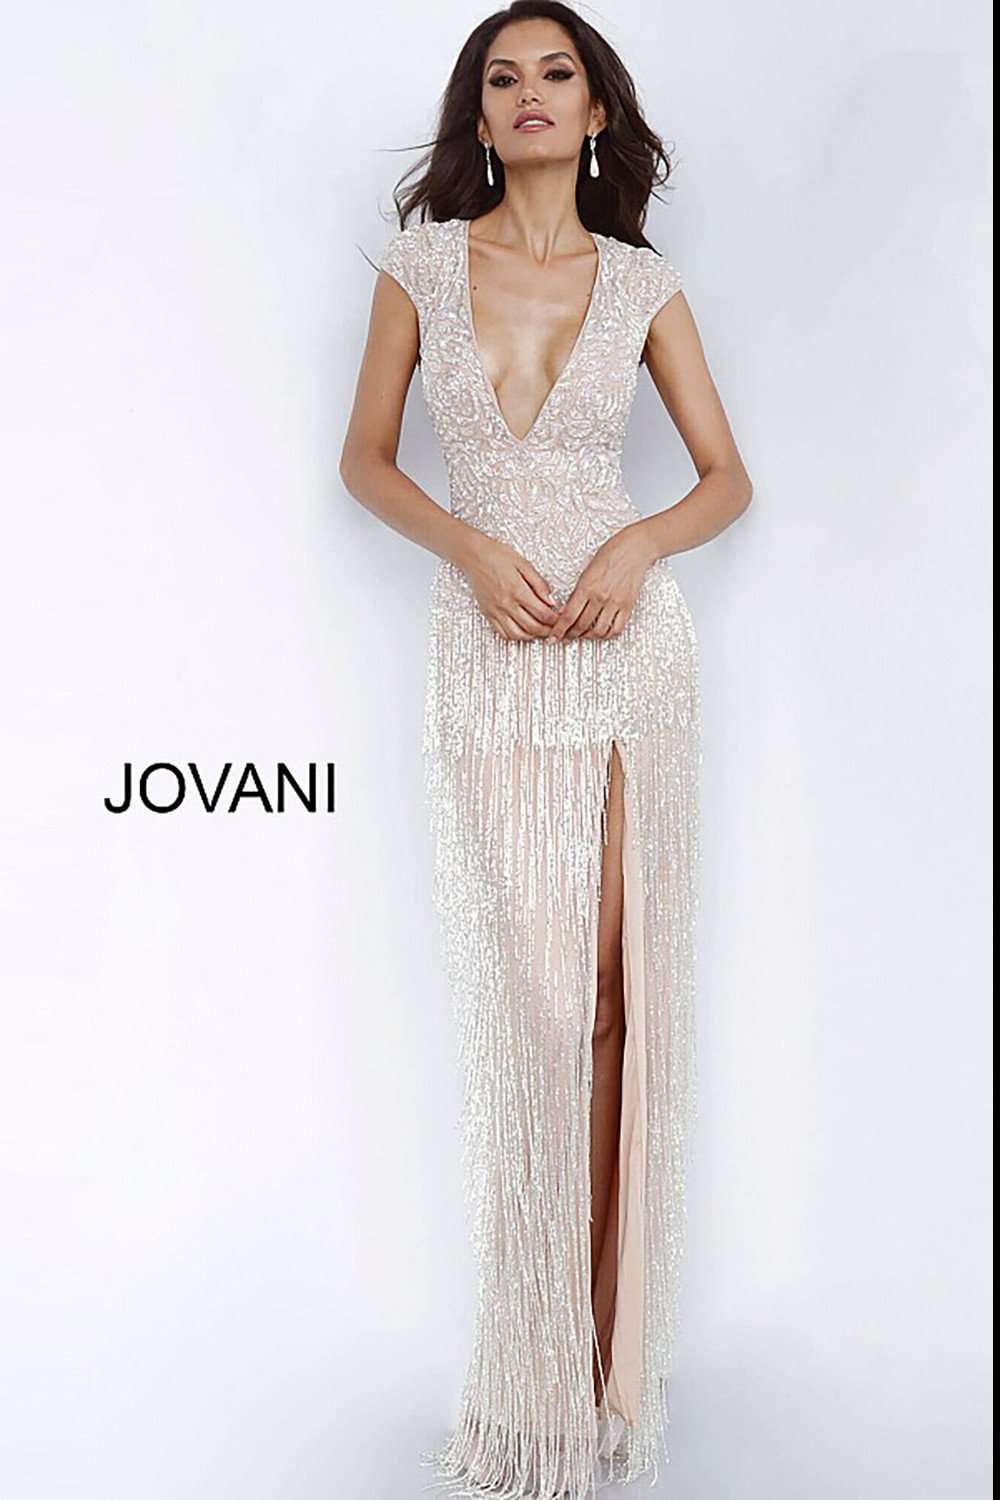 Nude High Slit Fringe Skirt Evening Dress Jovani 68792 - Morvarieds Fashion